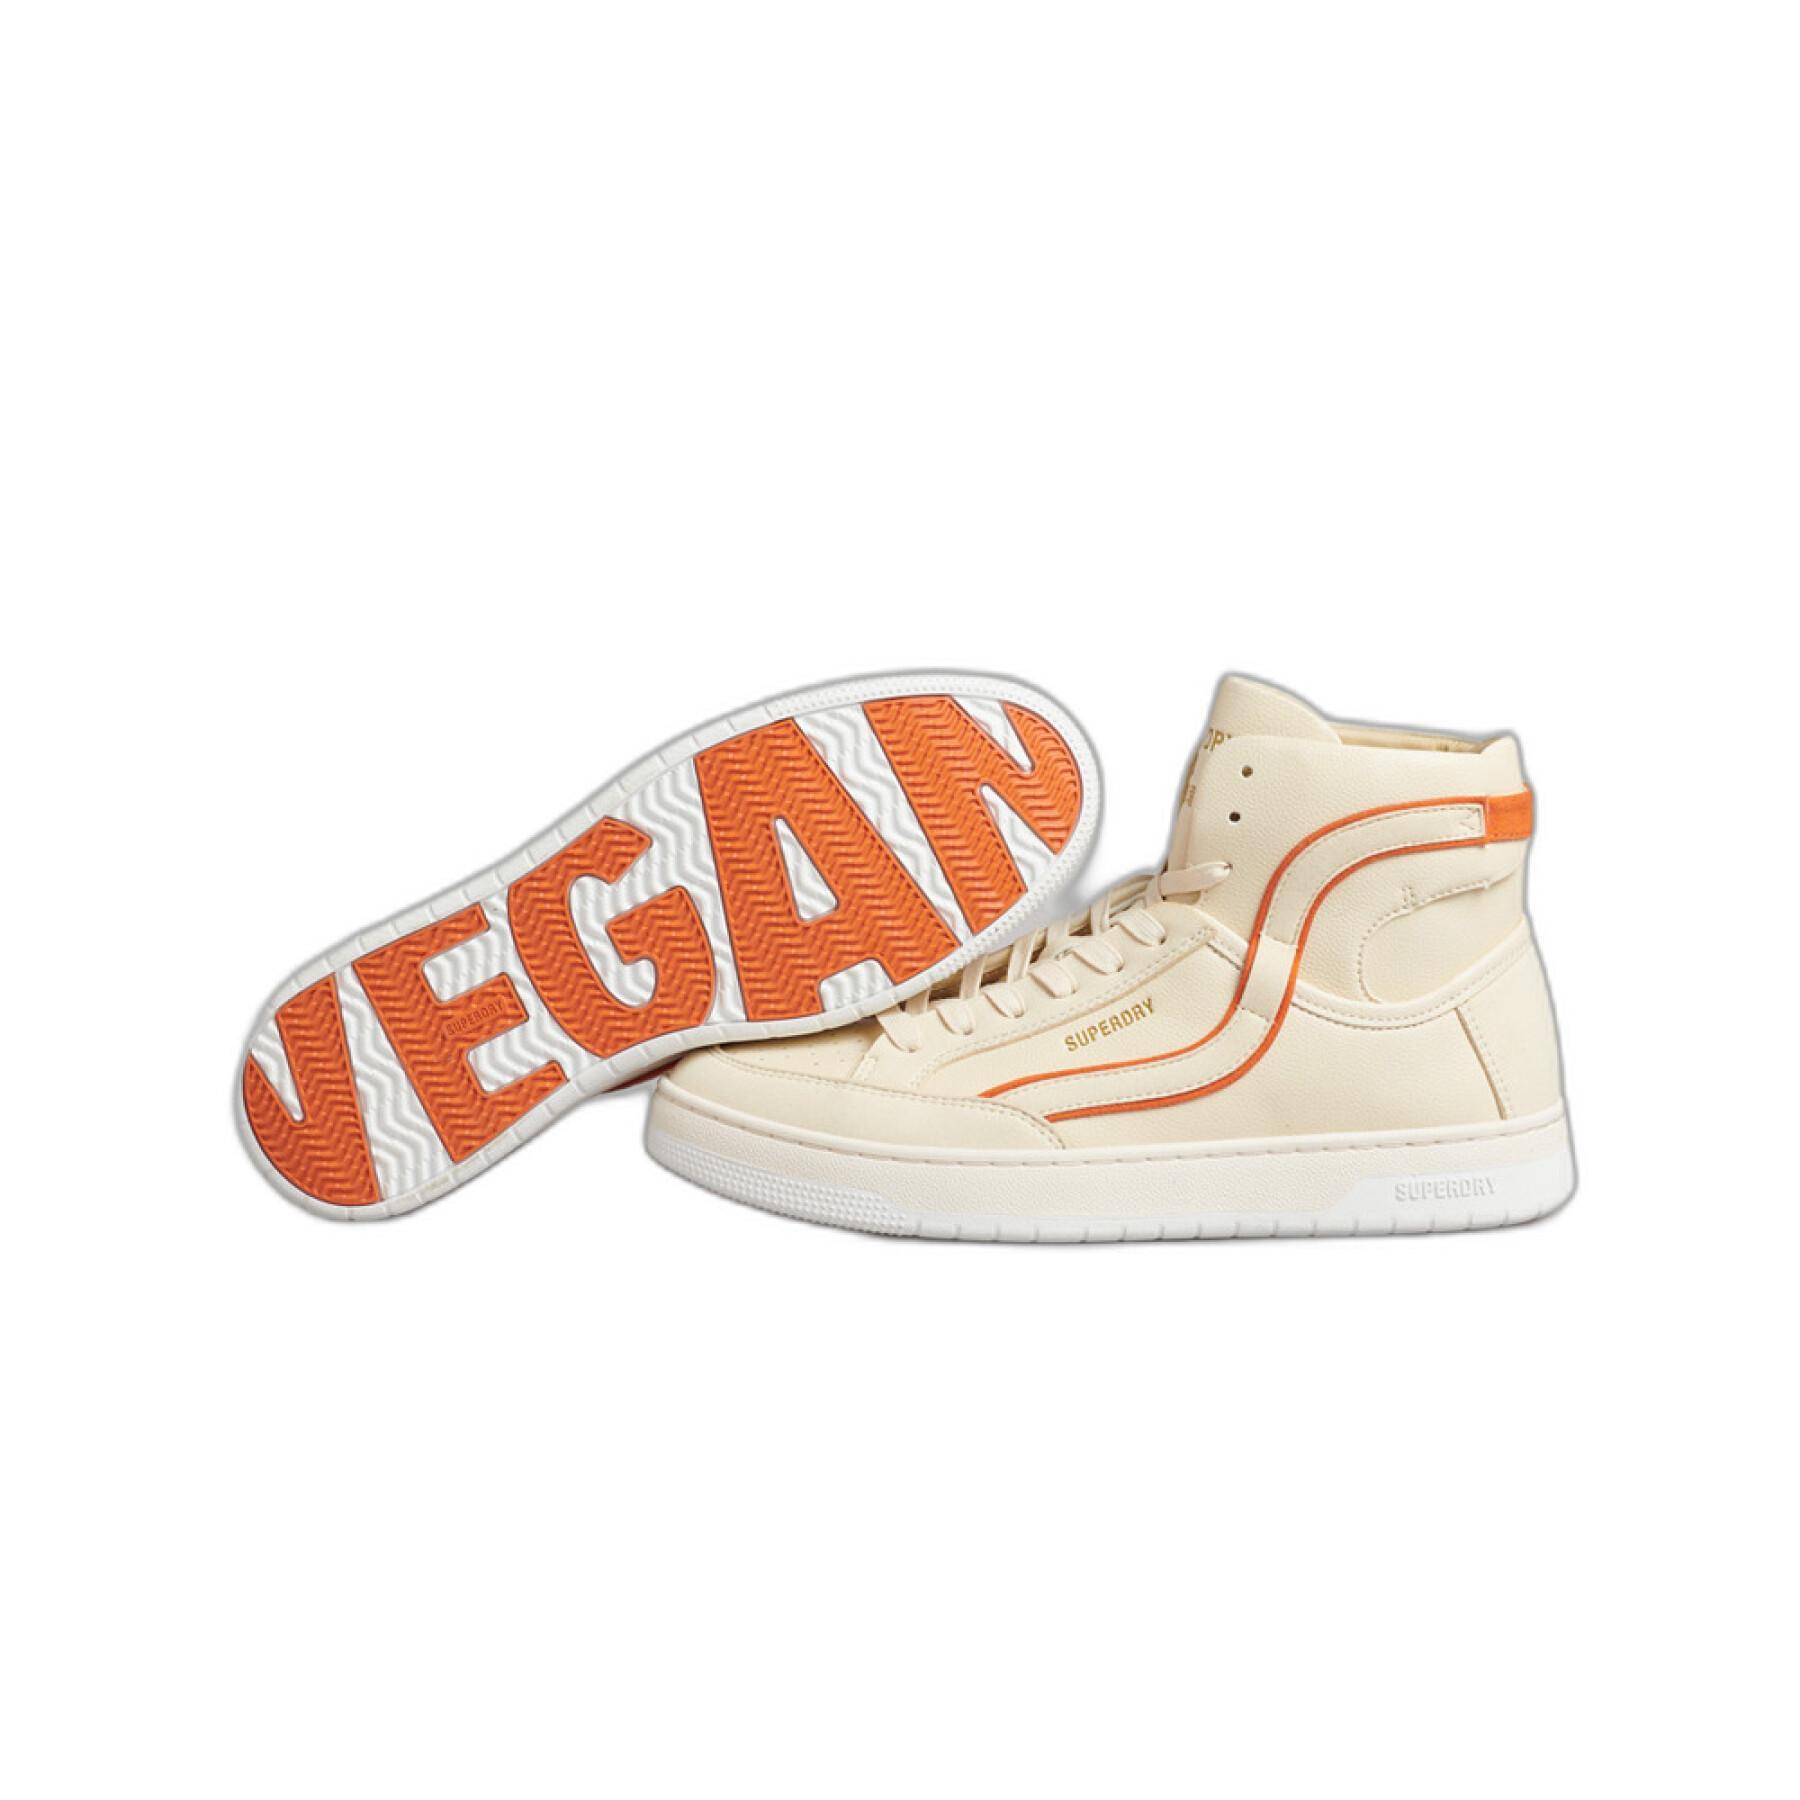 Women's high top sneakers Superdry Vegan Vintage